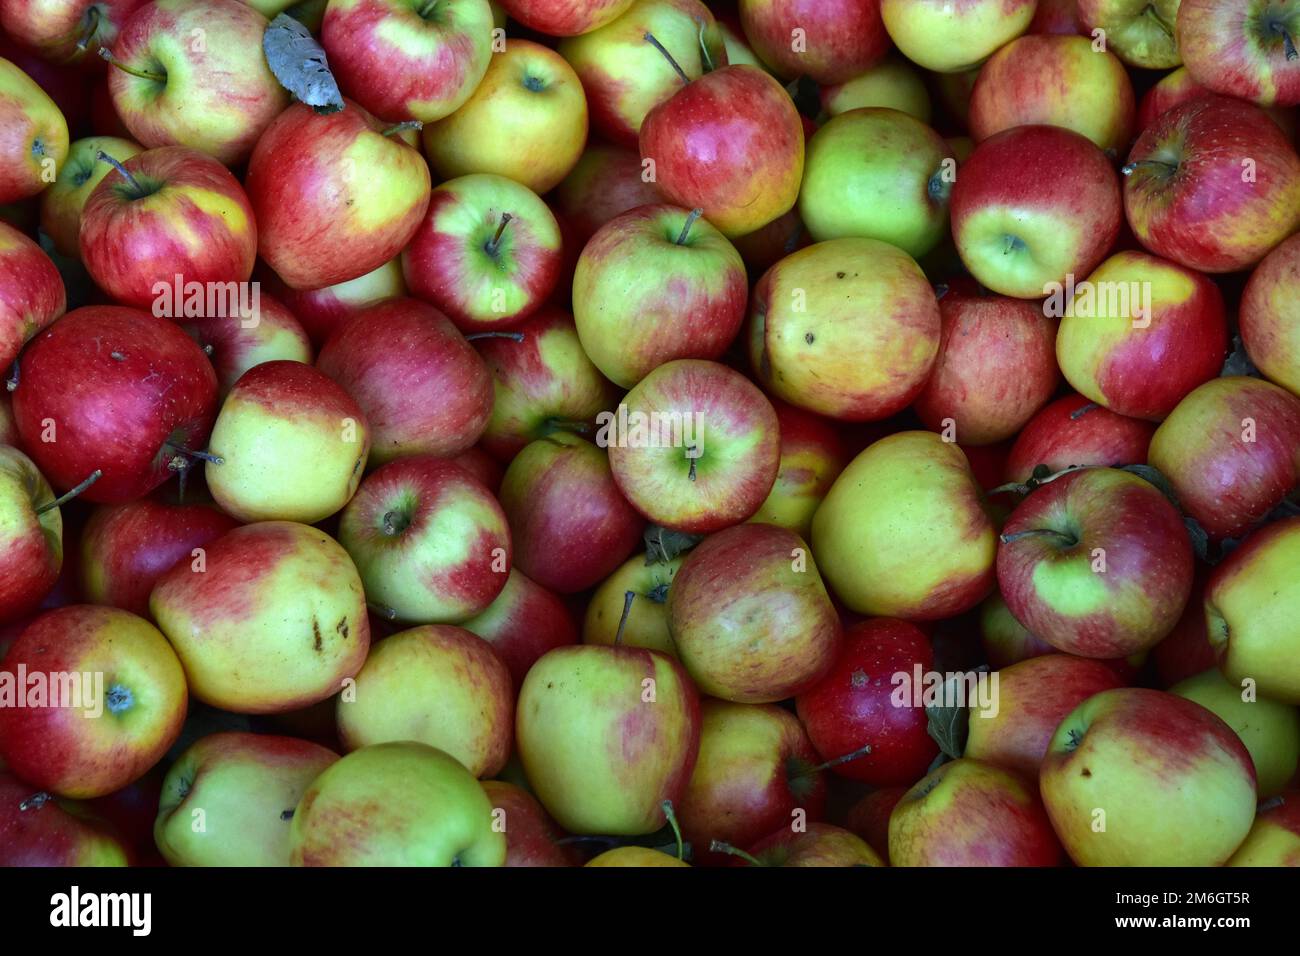 Apple Pinova, south tyrol, italy Stock Photo